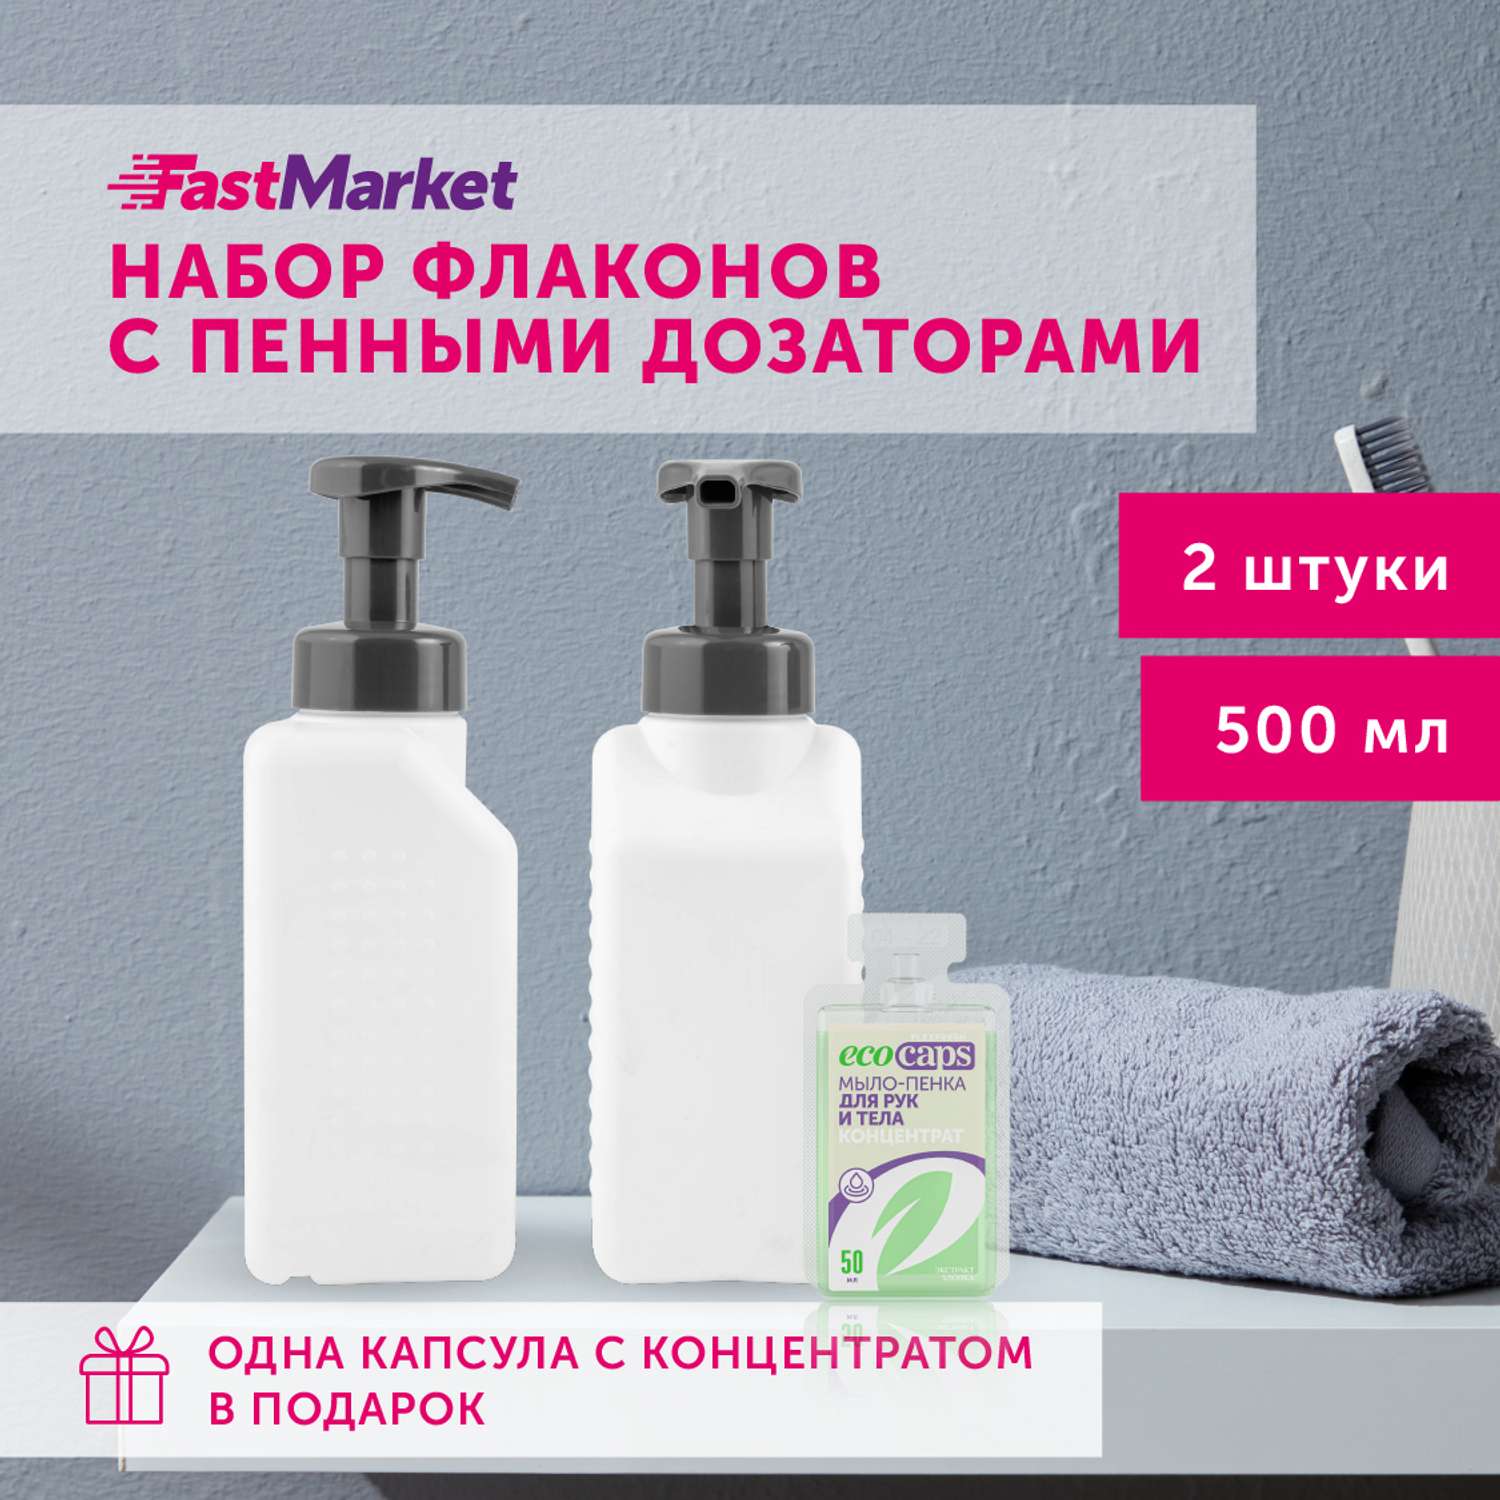 Дозаторы квадратные FastMarket для мыла-пенки 2шт по 500 мл - фото 2